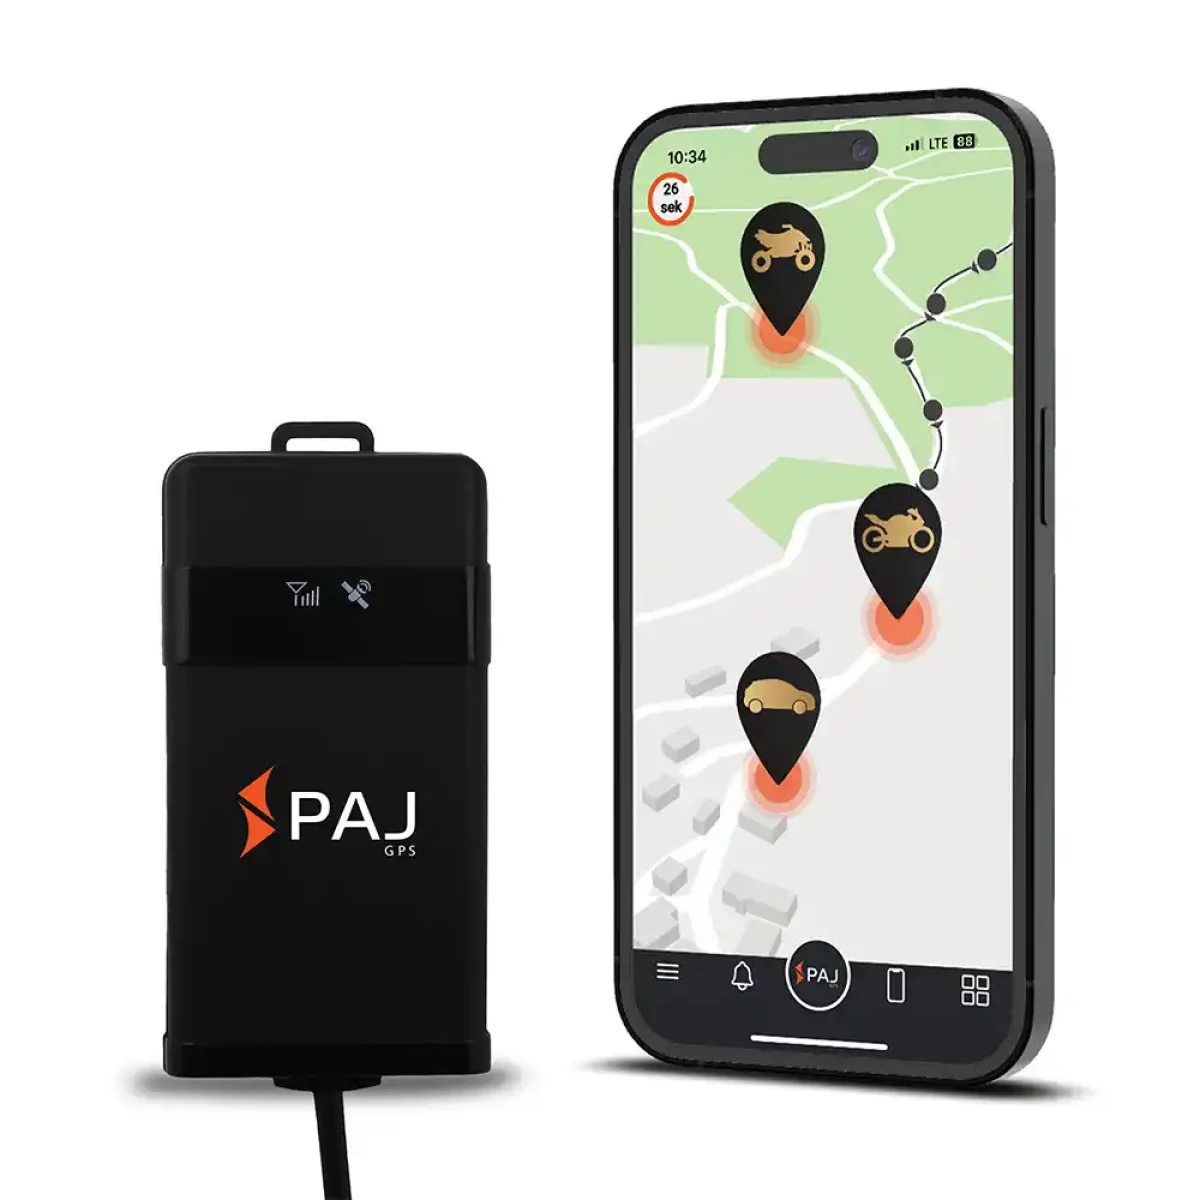 Paj gps Localizador Gps Allround Finder Con App Para Ios Y Android